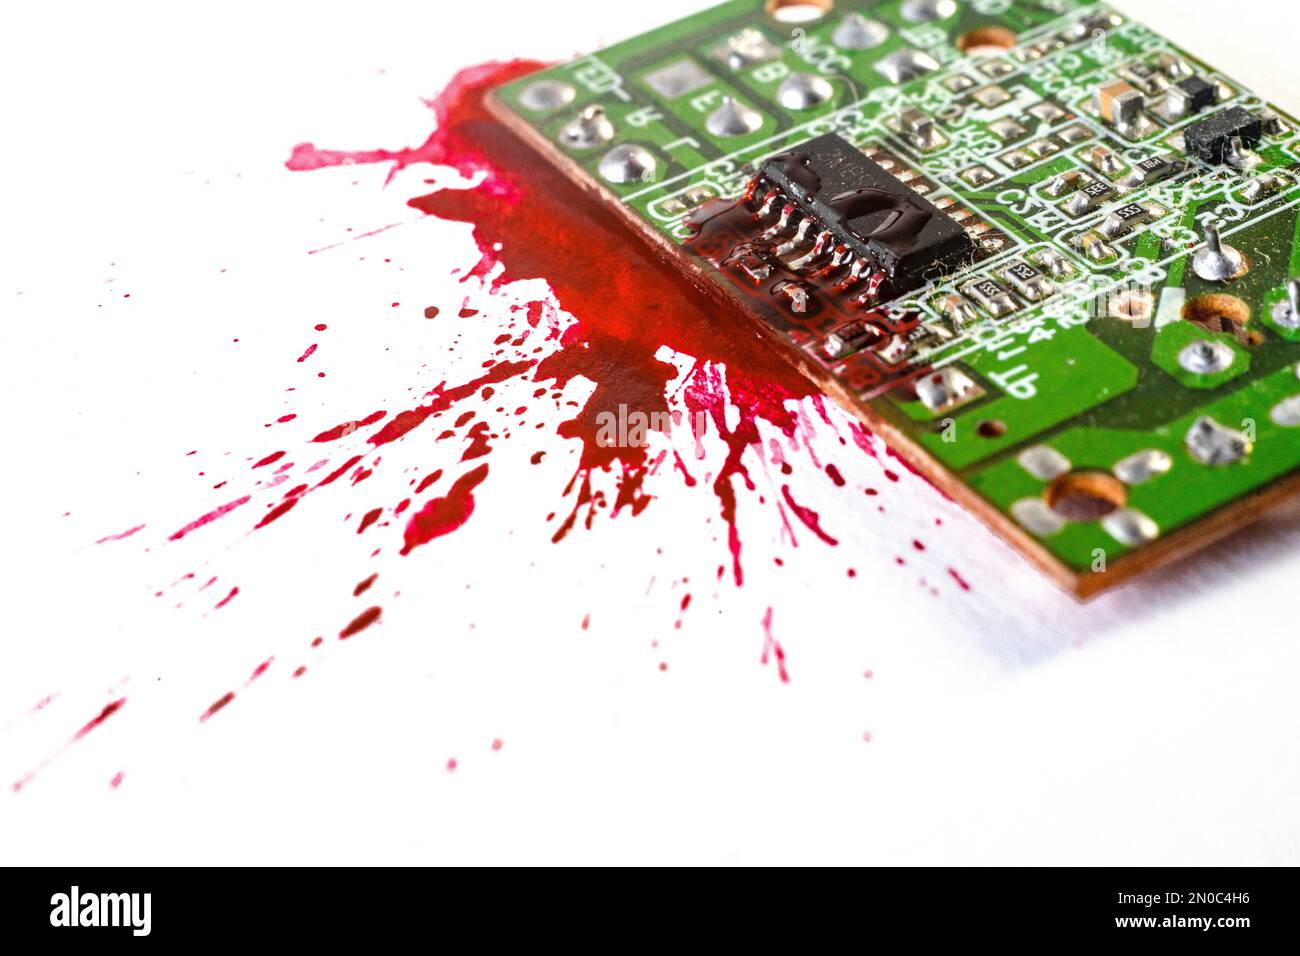 Platinenexplosion, mit roter Farbe, Blutexplosion eines elektronischen Bauteils. Makro für selektiven Fokus Stockfoto